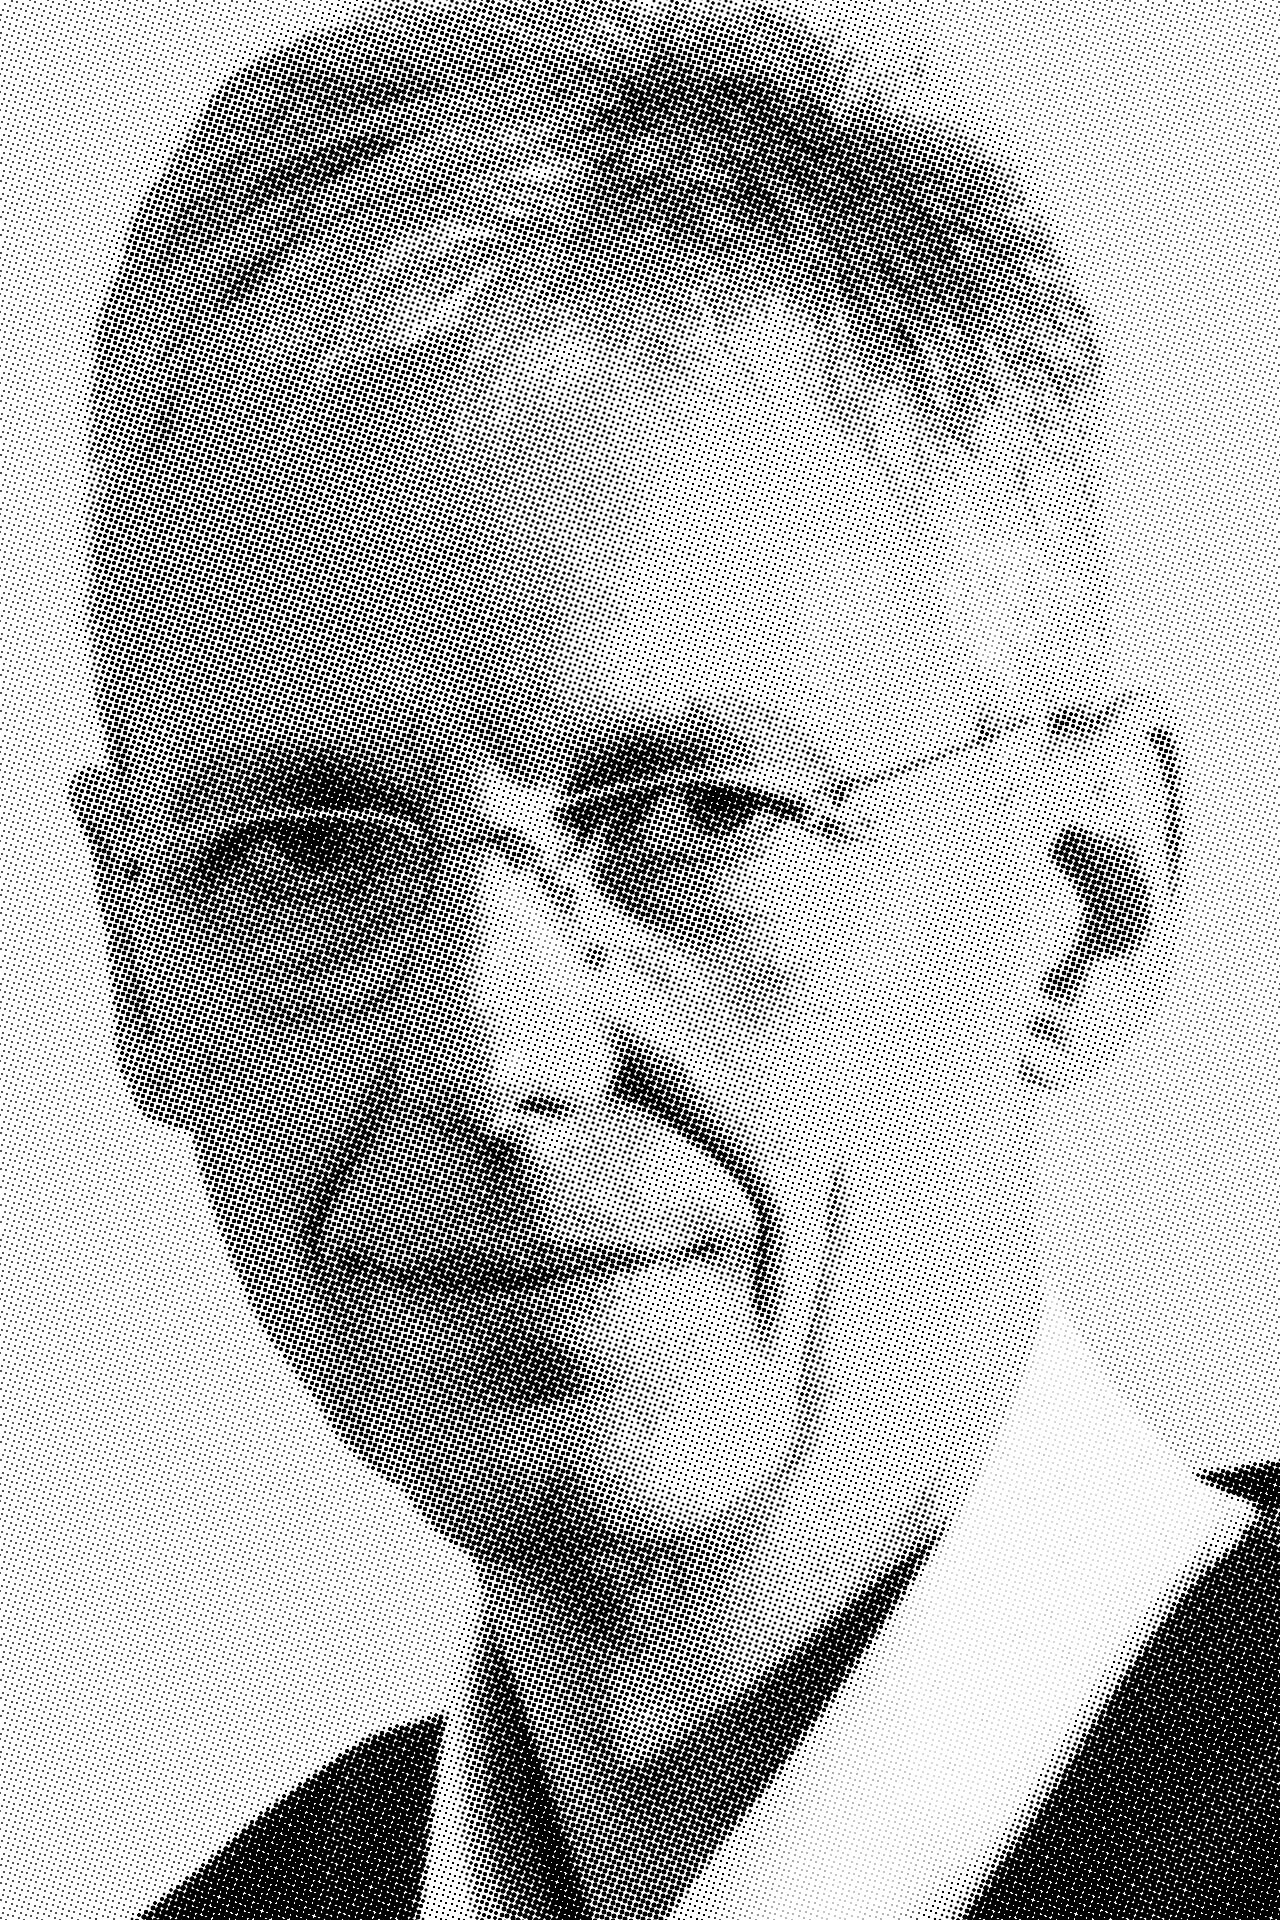 Prof. Dr. phil. Matthias Schirren